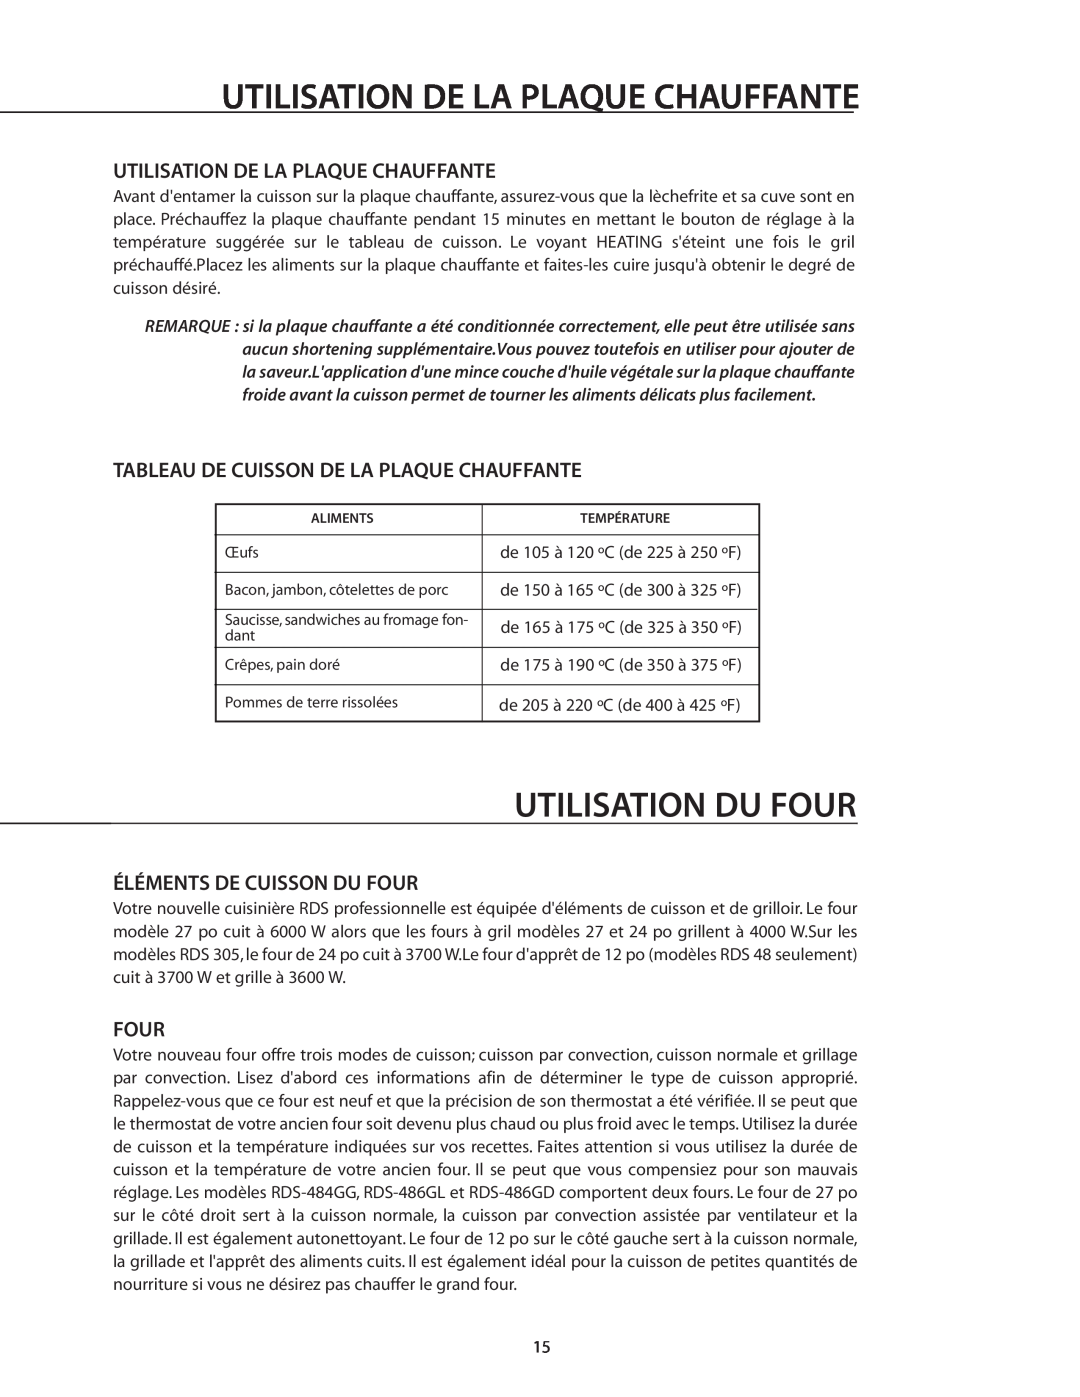 DCS RDS-366 manual Utilisation Du Four, Utilisation De La Plaque Chauffante, Tableau De Cuisson De La Plaque Chauffante 